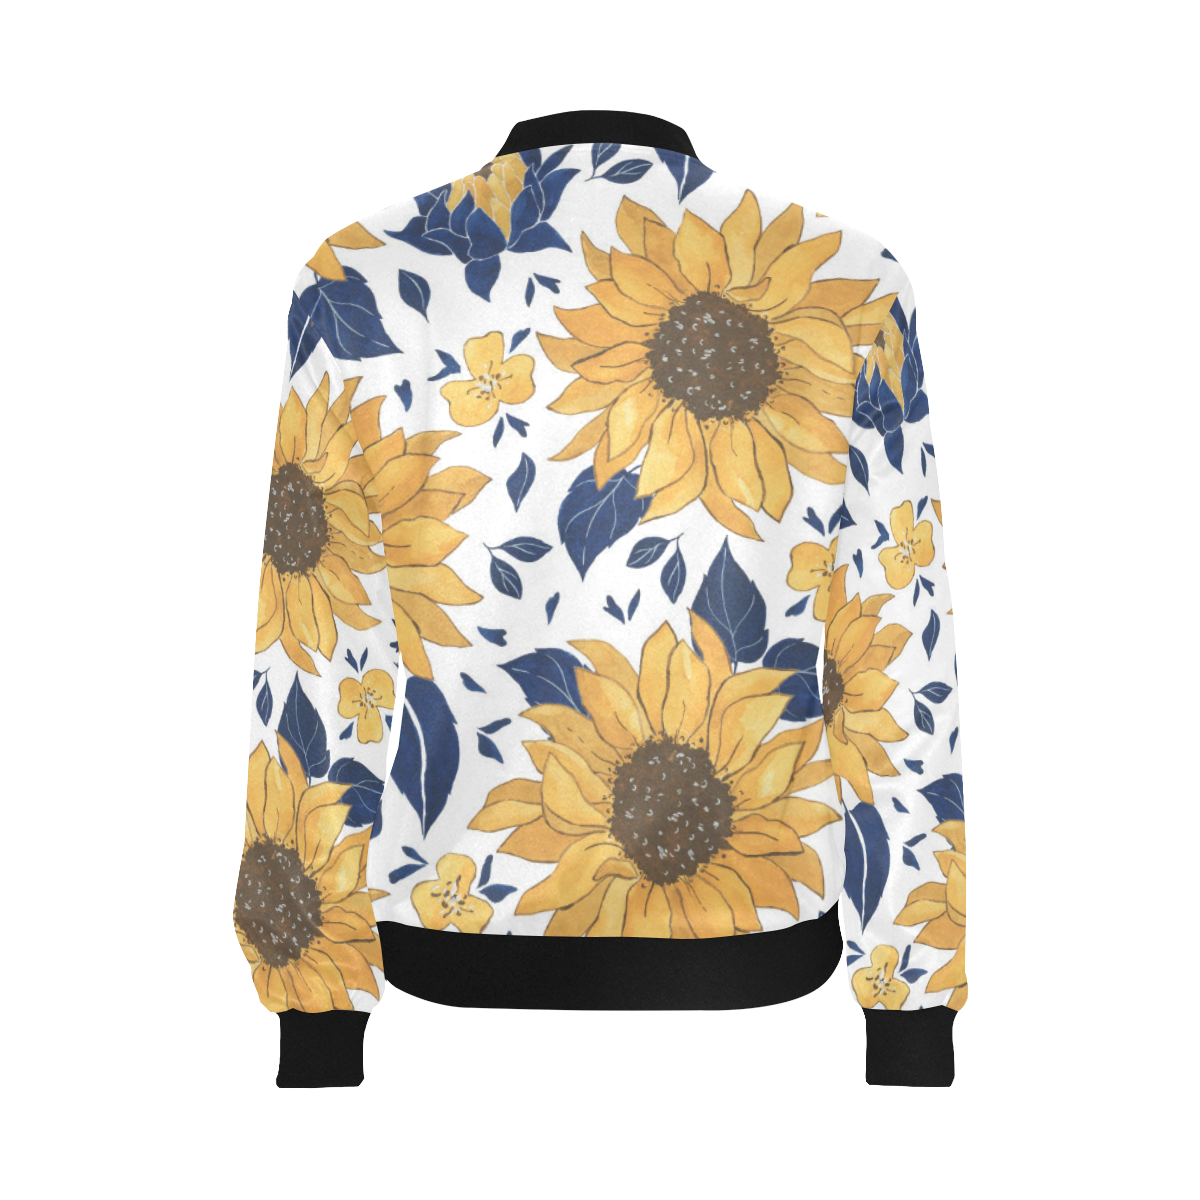 Sunflowers All Over Print Bomber Jacket for Women (Model H36)